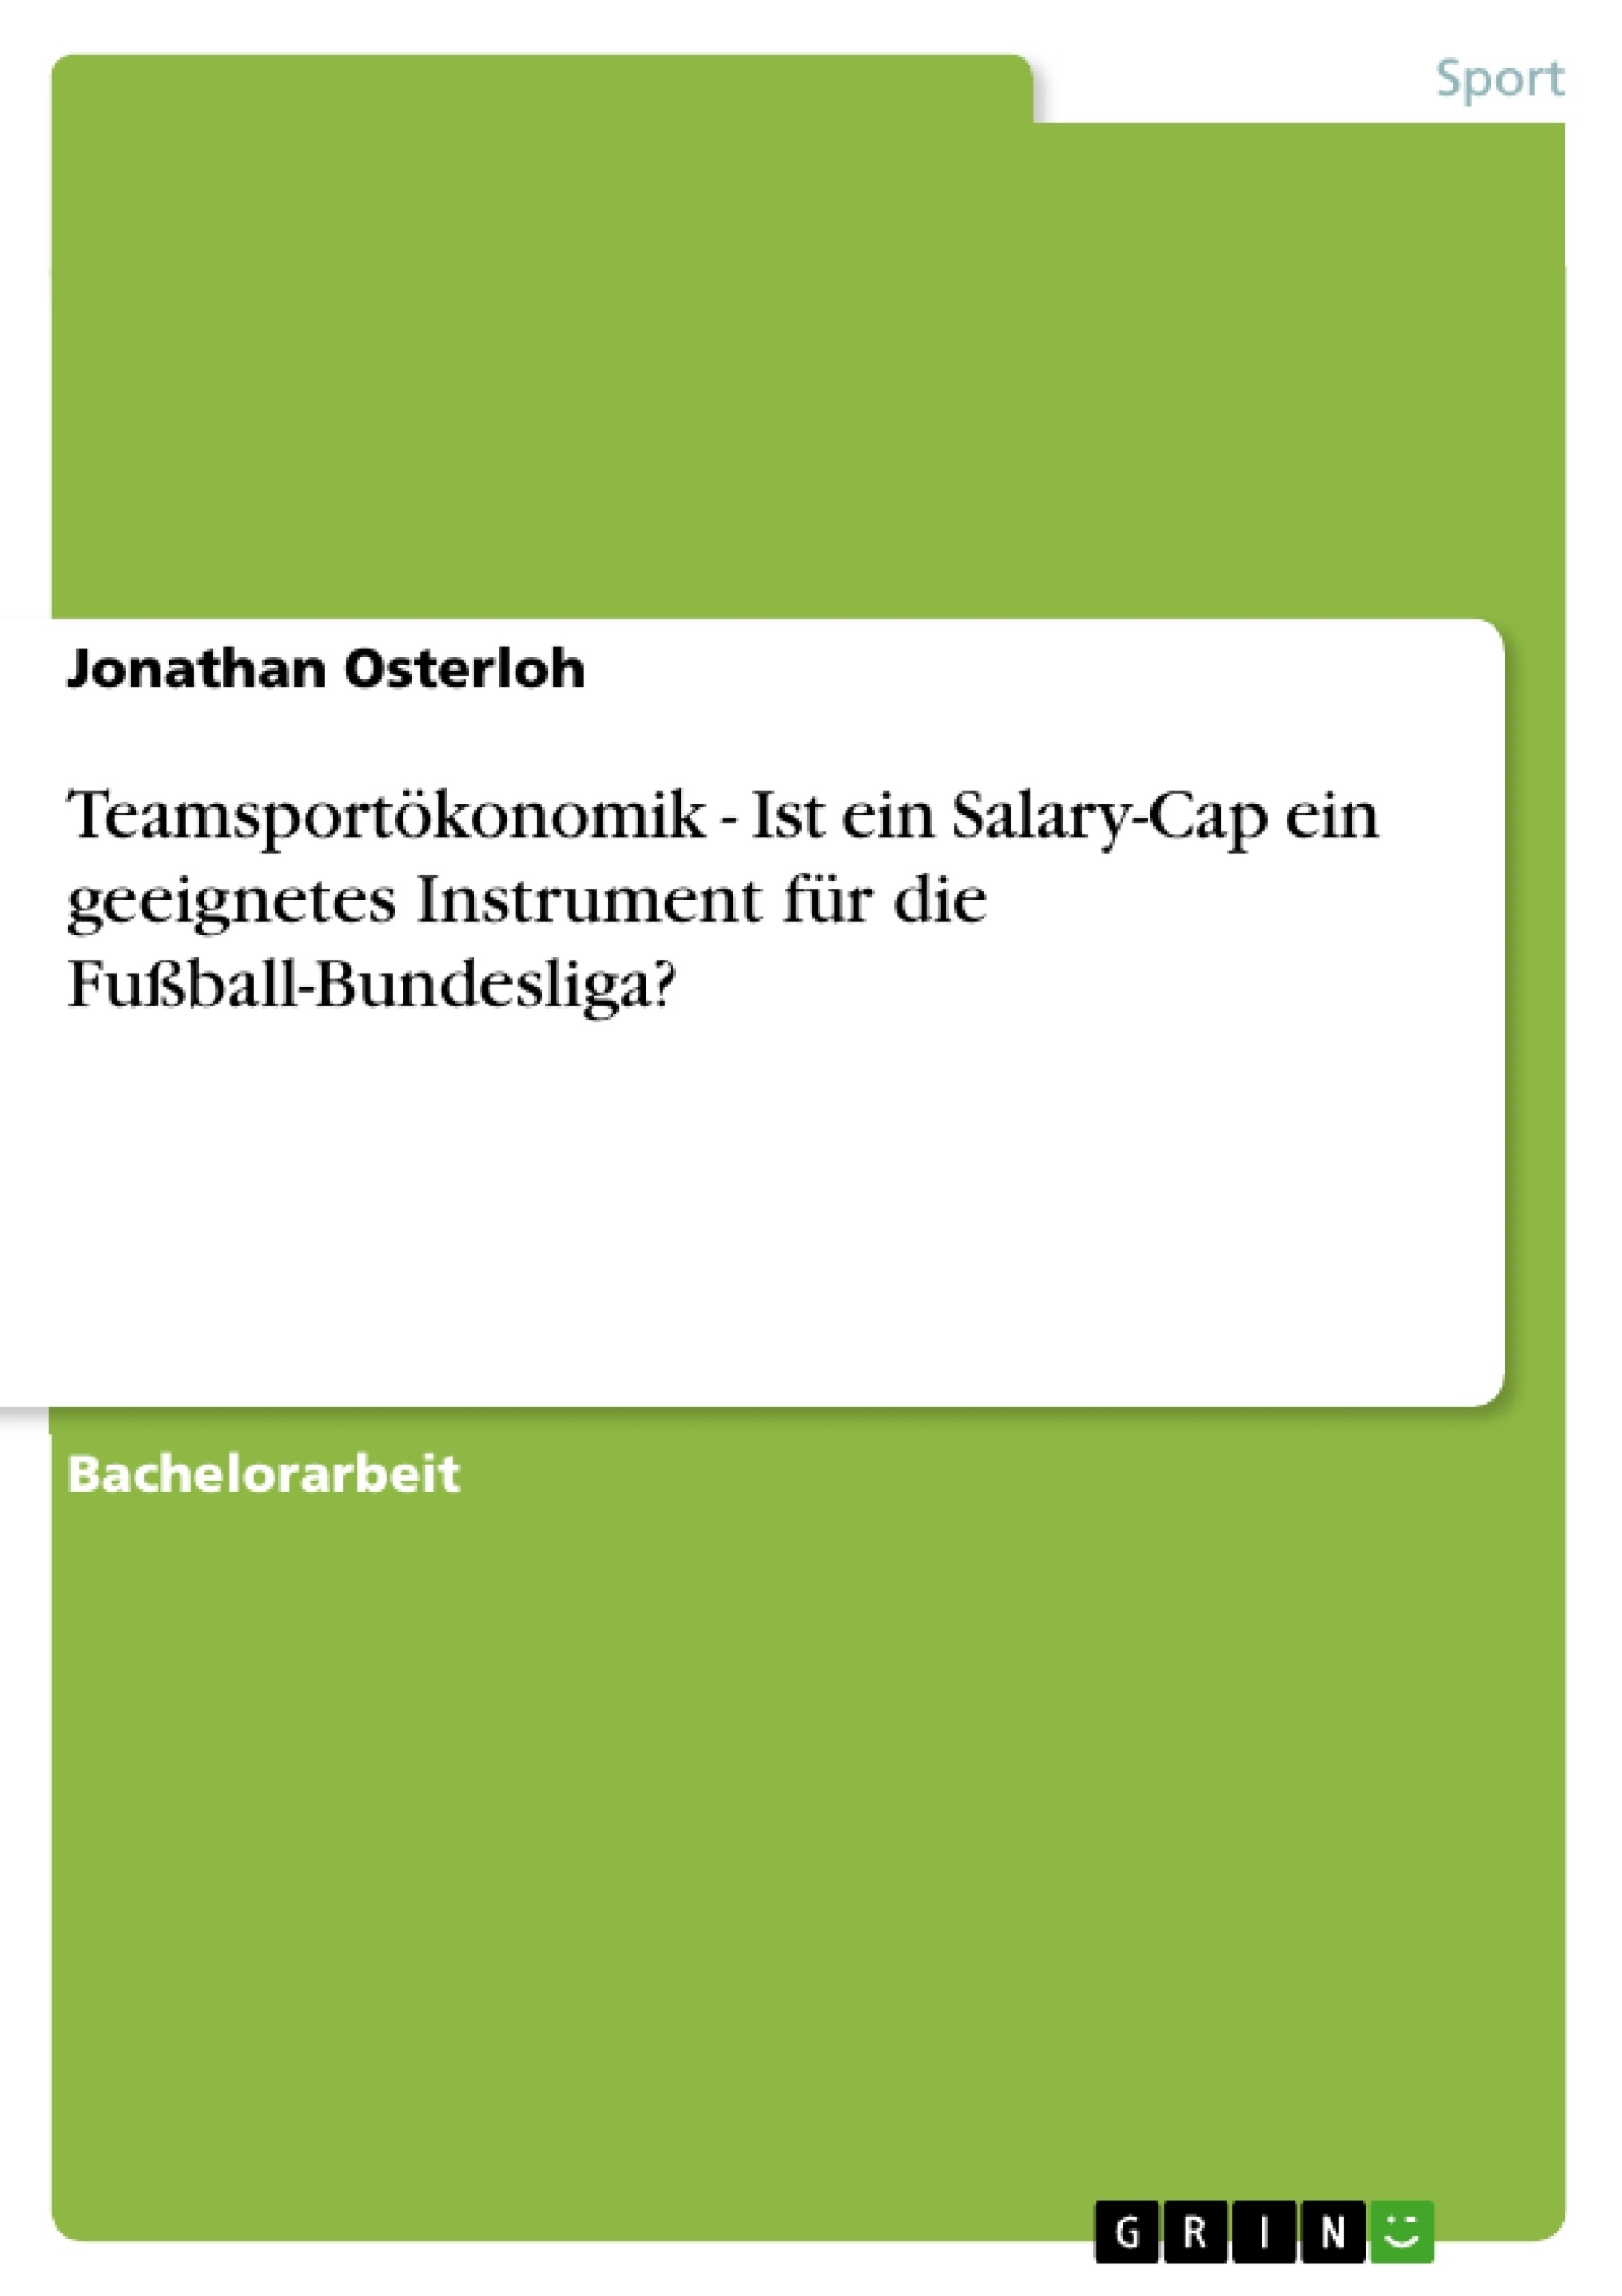 Título: Teamsportökonomik - Ist ein Salary-Cap ein geeignetes Instrument für die Fußball-Bundesliga?